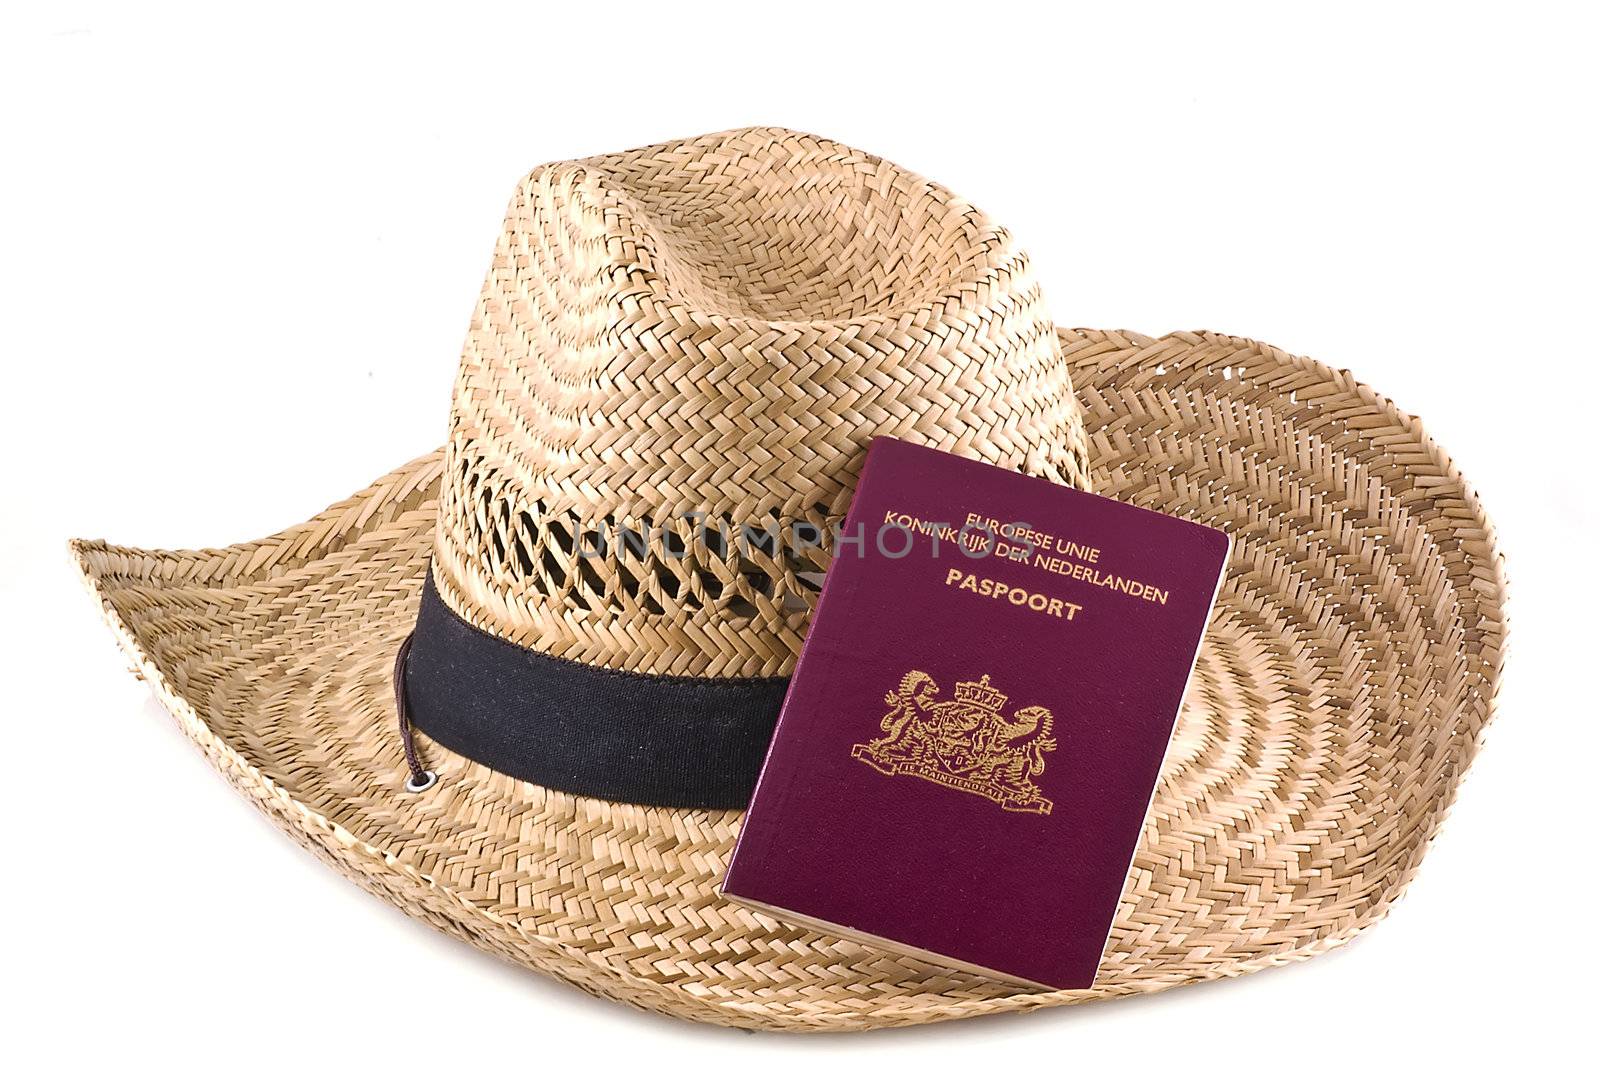 Straw hat with european passport. by SasPartout